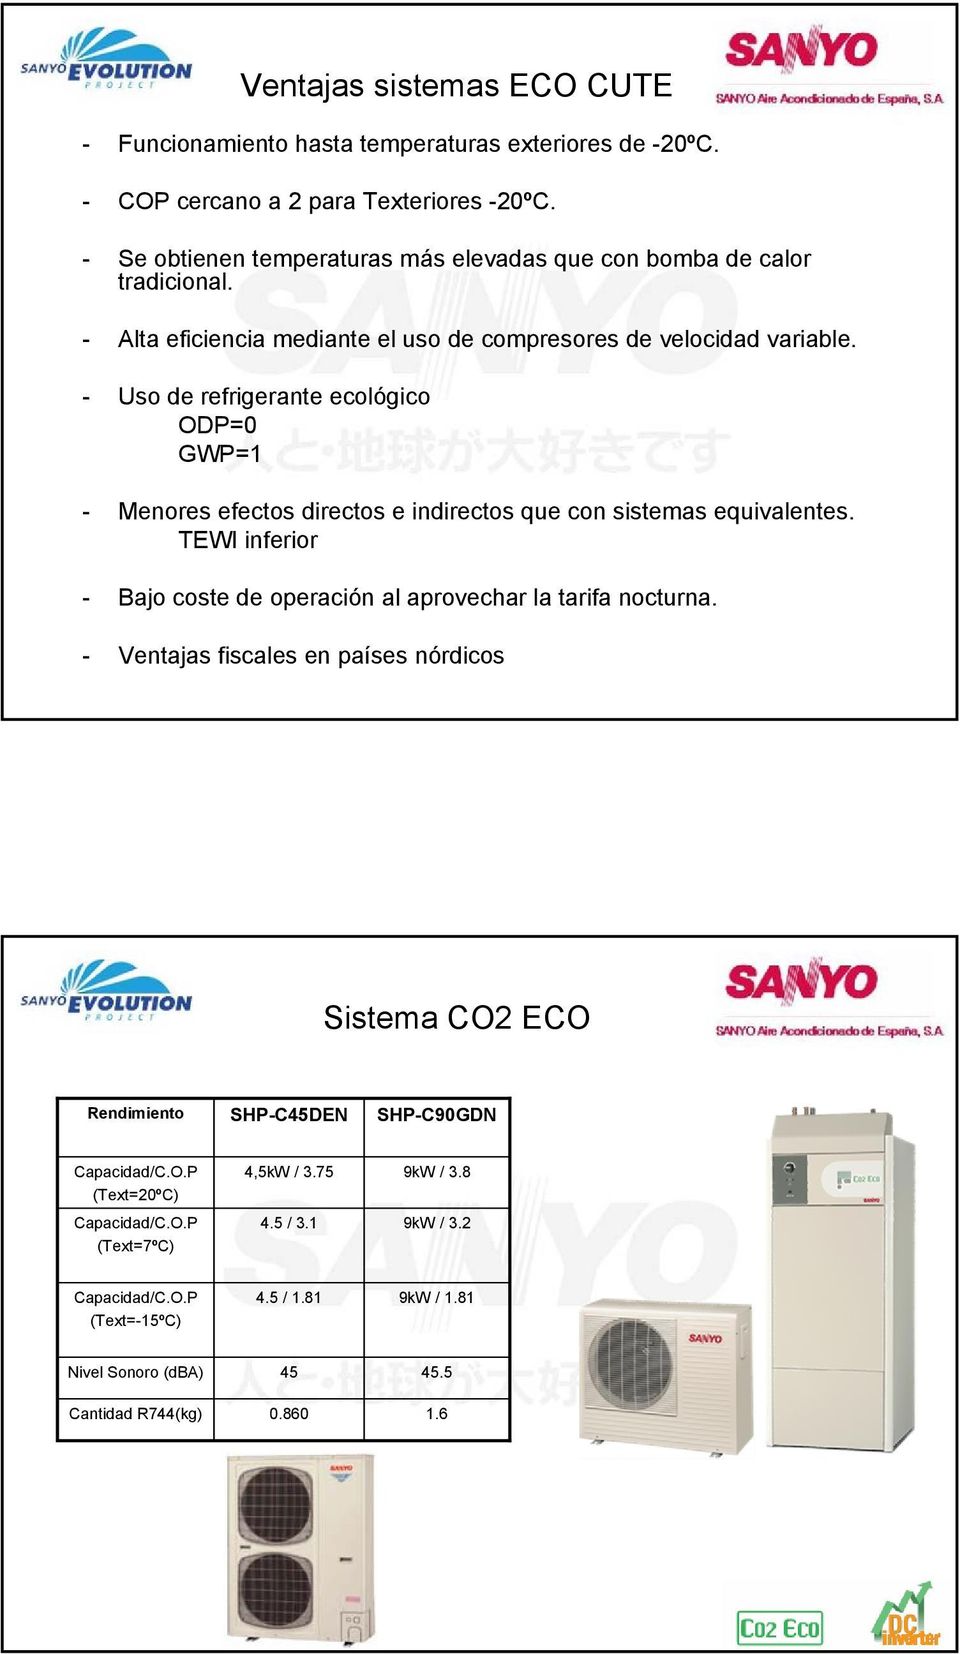 - Uso de refrigerante ecológico ODP=0 GWP=1 - Menores efectos directos e indirectos que con sistemas equivalentes. TEWI inferior - Bajo coste de operación al aprovechar la tarifa nocturna.